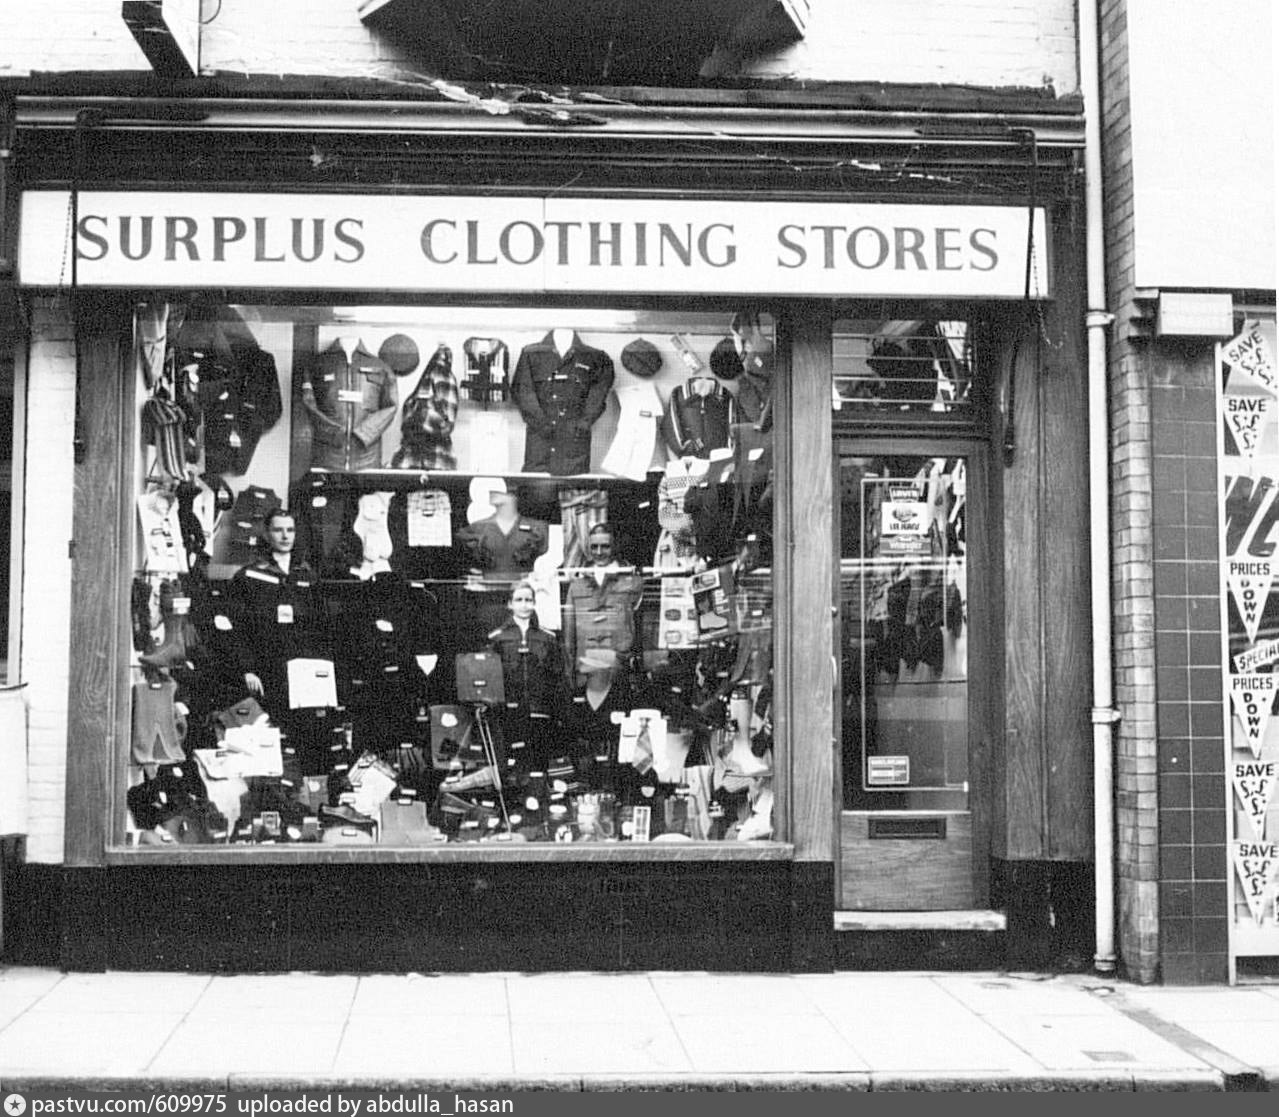 Surplus clothing stores